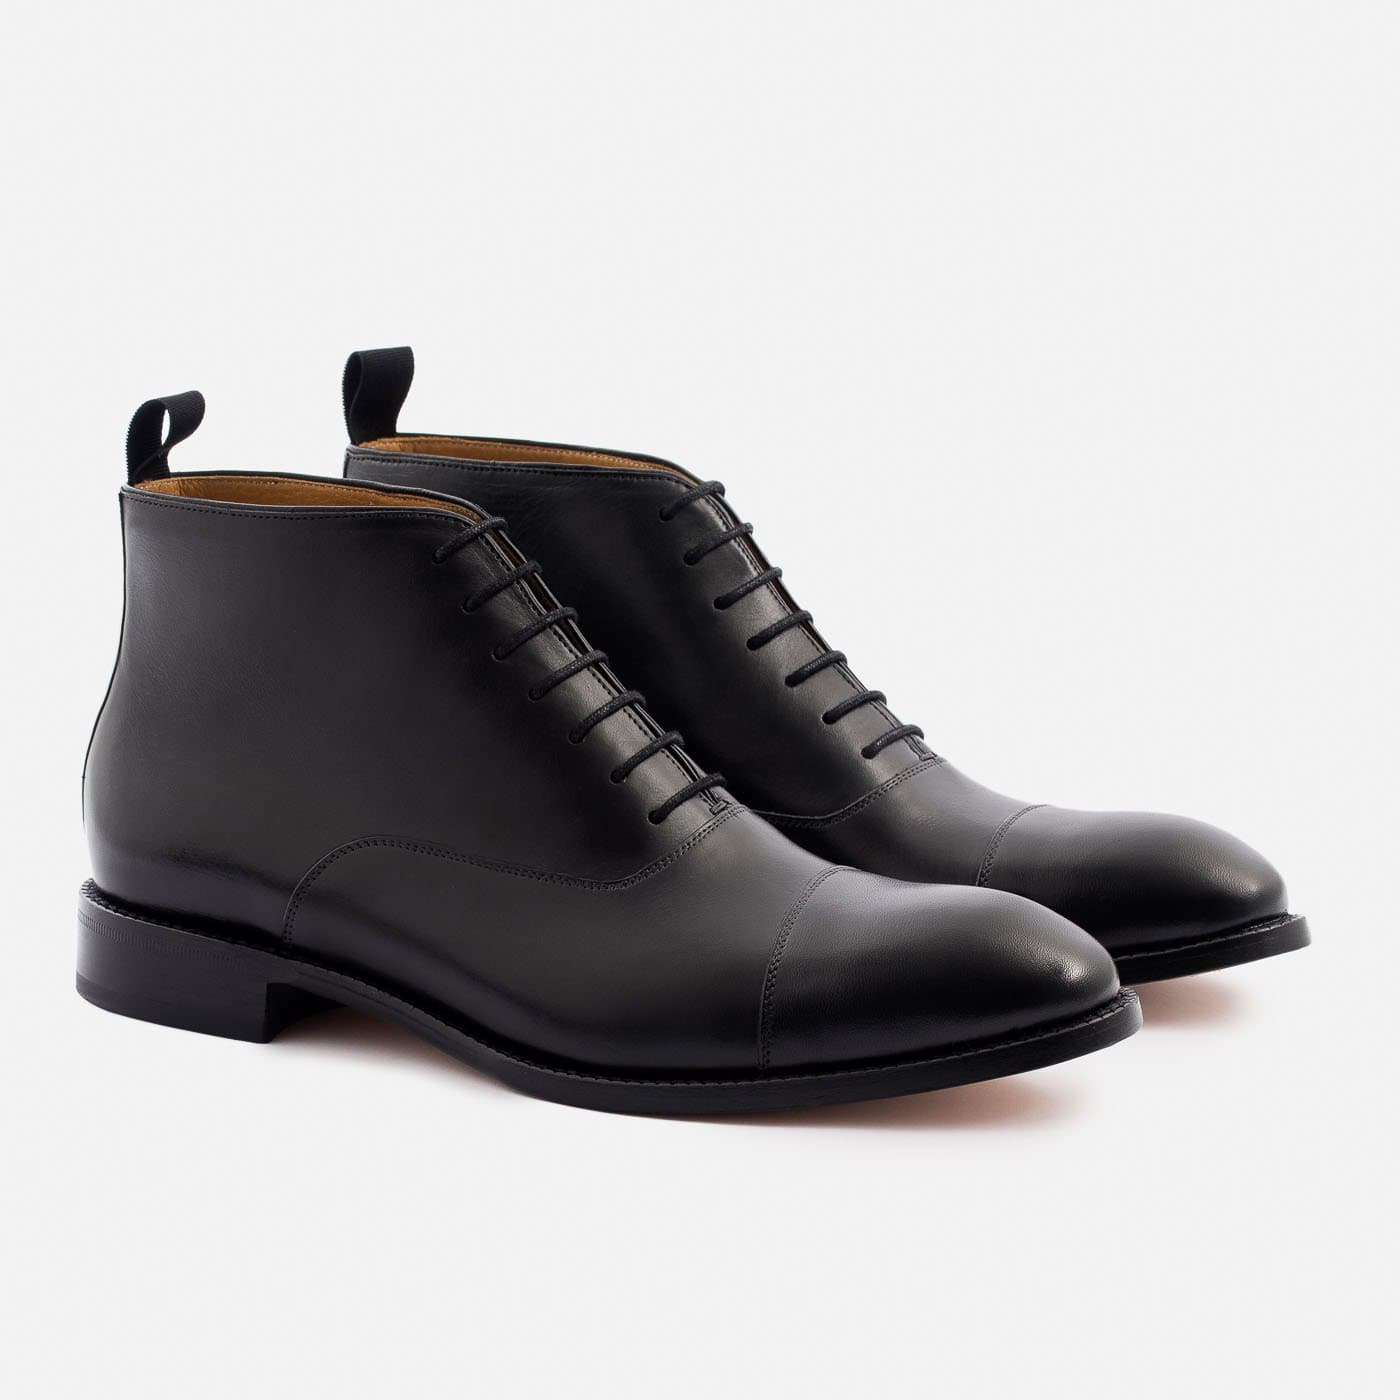 Fonseca Boots - Men's